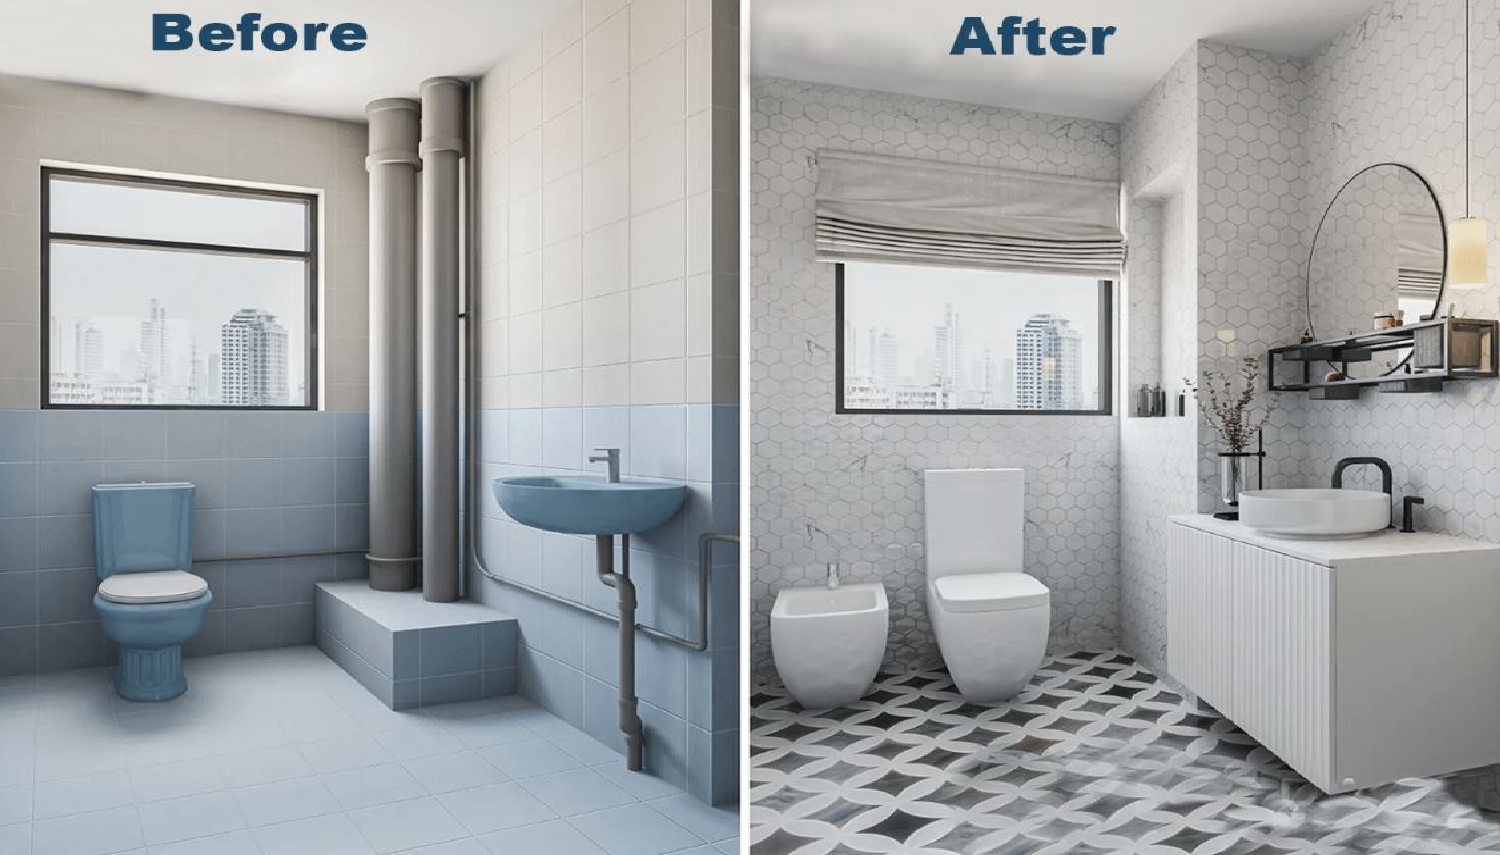 ایده های کم هزینه برای بازسازی حمام و سرویس بهداشتی